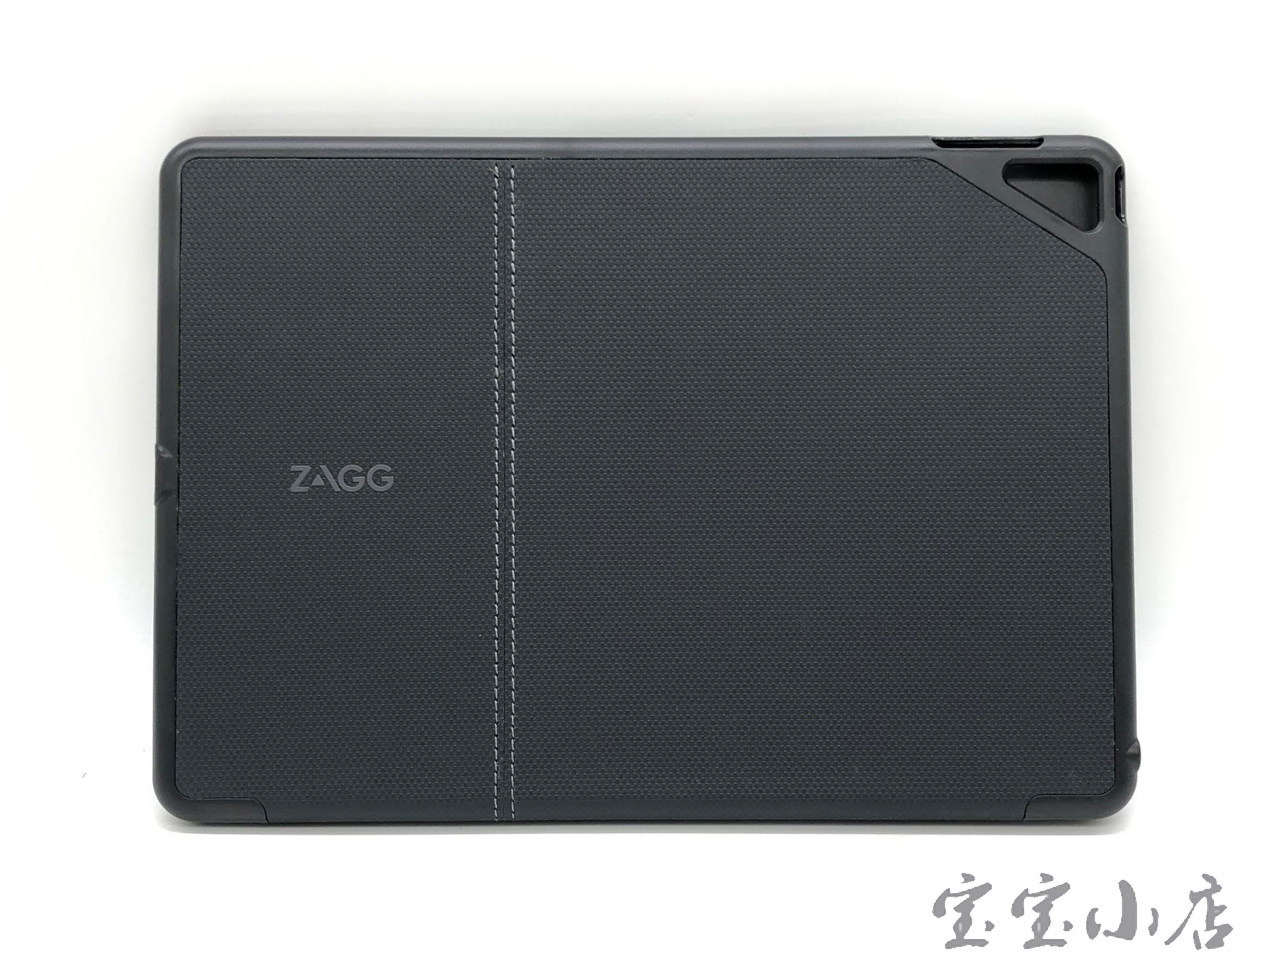 罗技ZAGG folio蓝牙无线键盘 QTG-ZKIS Apple iPad Air 2 保护套适用于苹果9.7寸IPAD AIR 2 2014年A1566 A1567.A1474 1475.